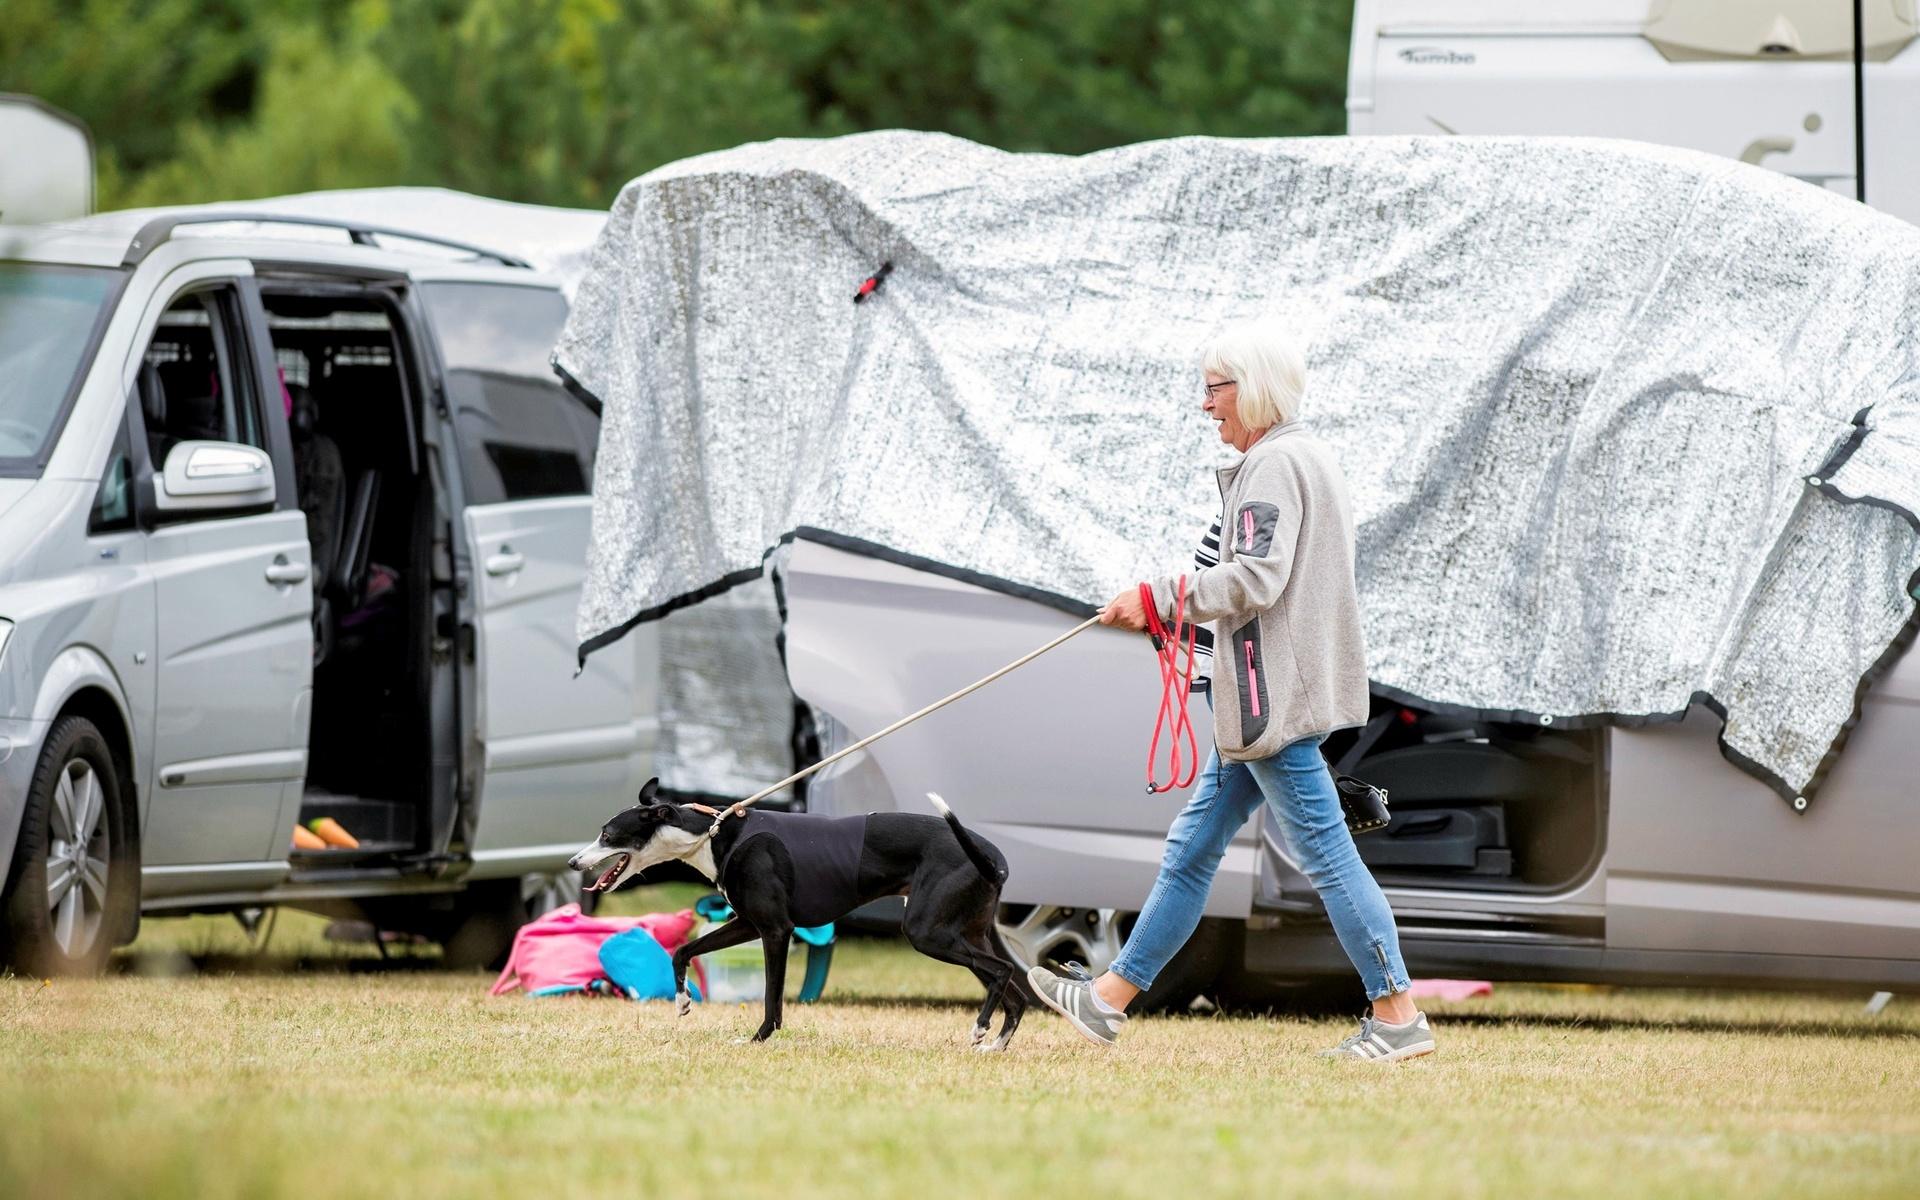 Runt hela området är det full aktivitet där många har rest från olika delar av Sverige och parkerat sina husvagnar. Överallt ser man hundägare som går runt med sina whippets i väntan på att deras hundar ska få springa just sitt heat. 